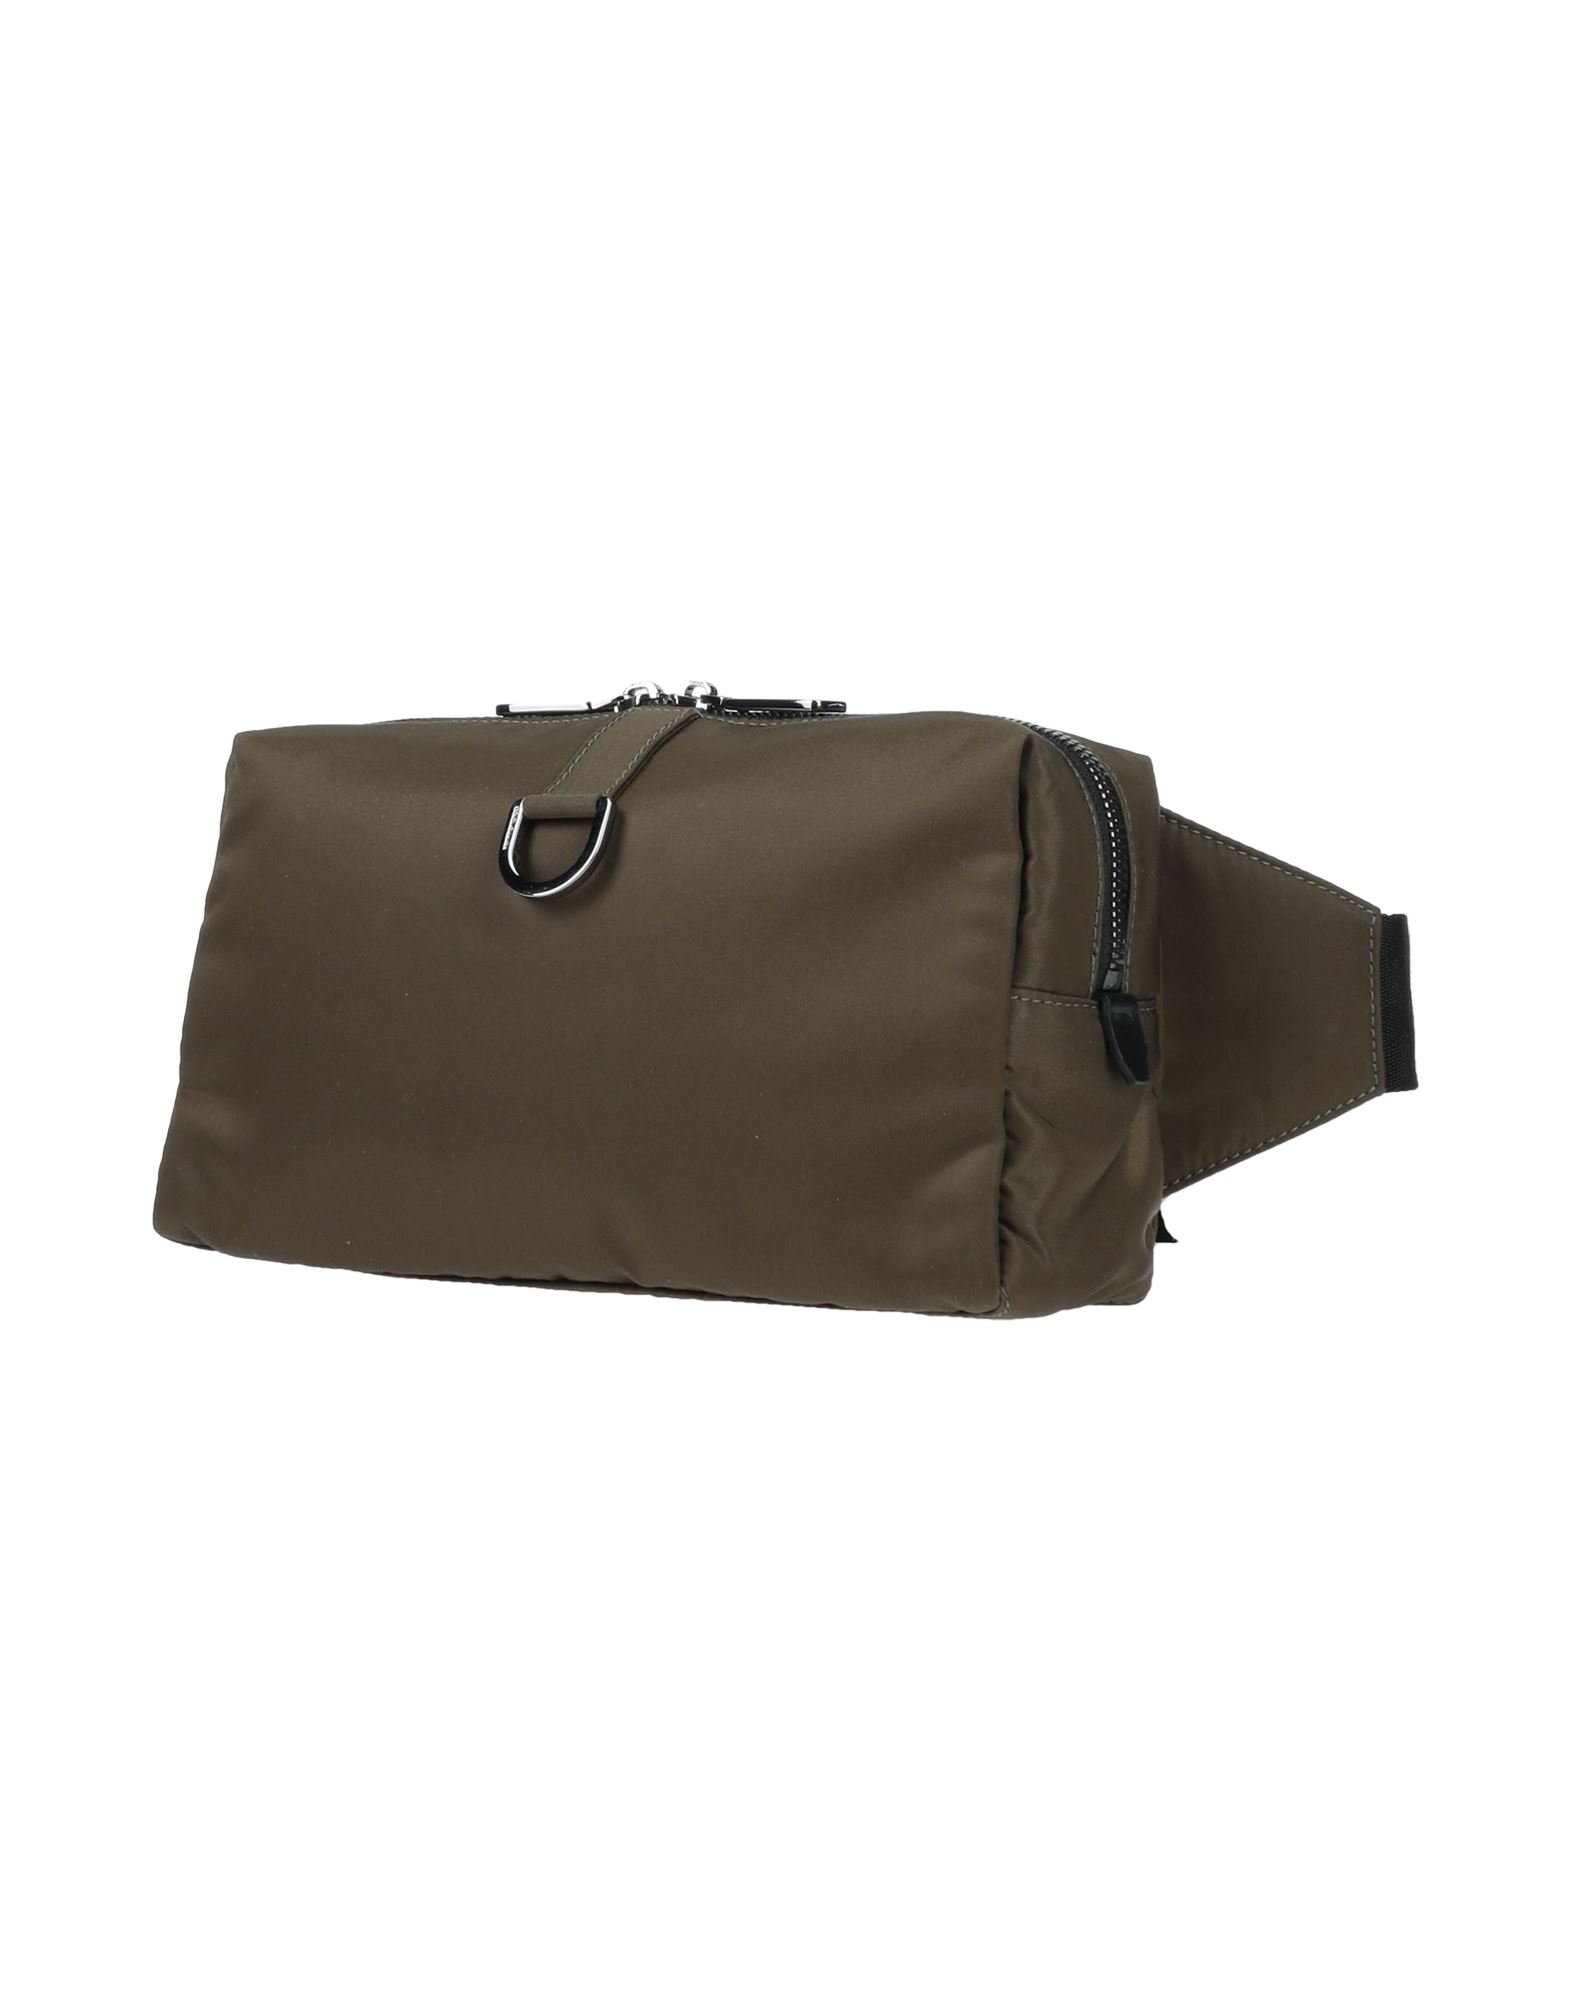 Dolce & Gabbana Man Belt Bag Military Green Size - Polyamide, Calfskin